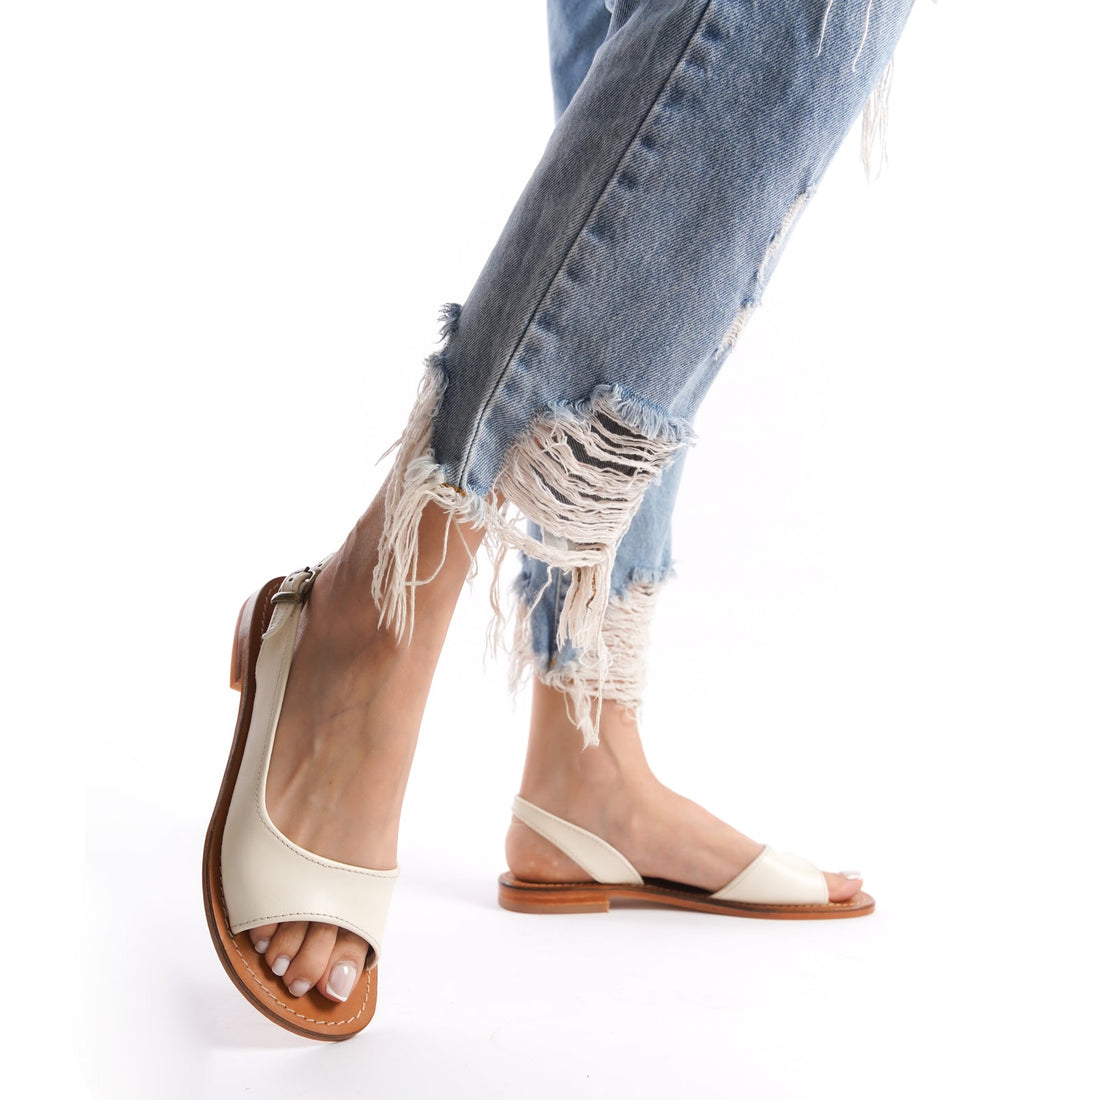 Slingback Flat Sandals Open Toe for Women White